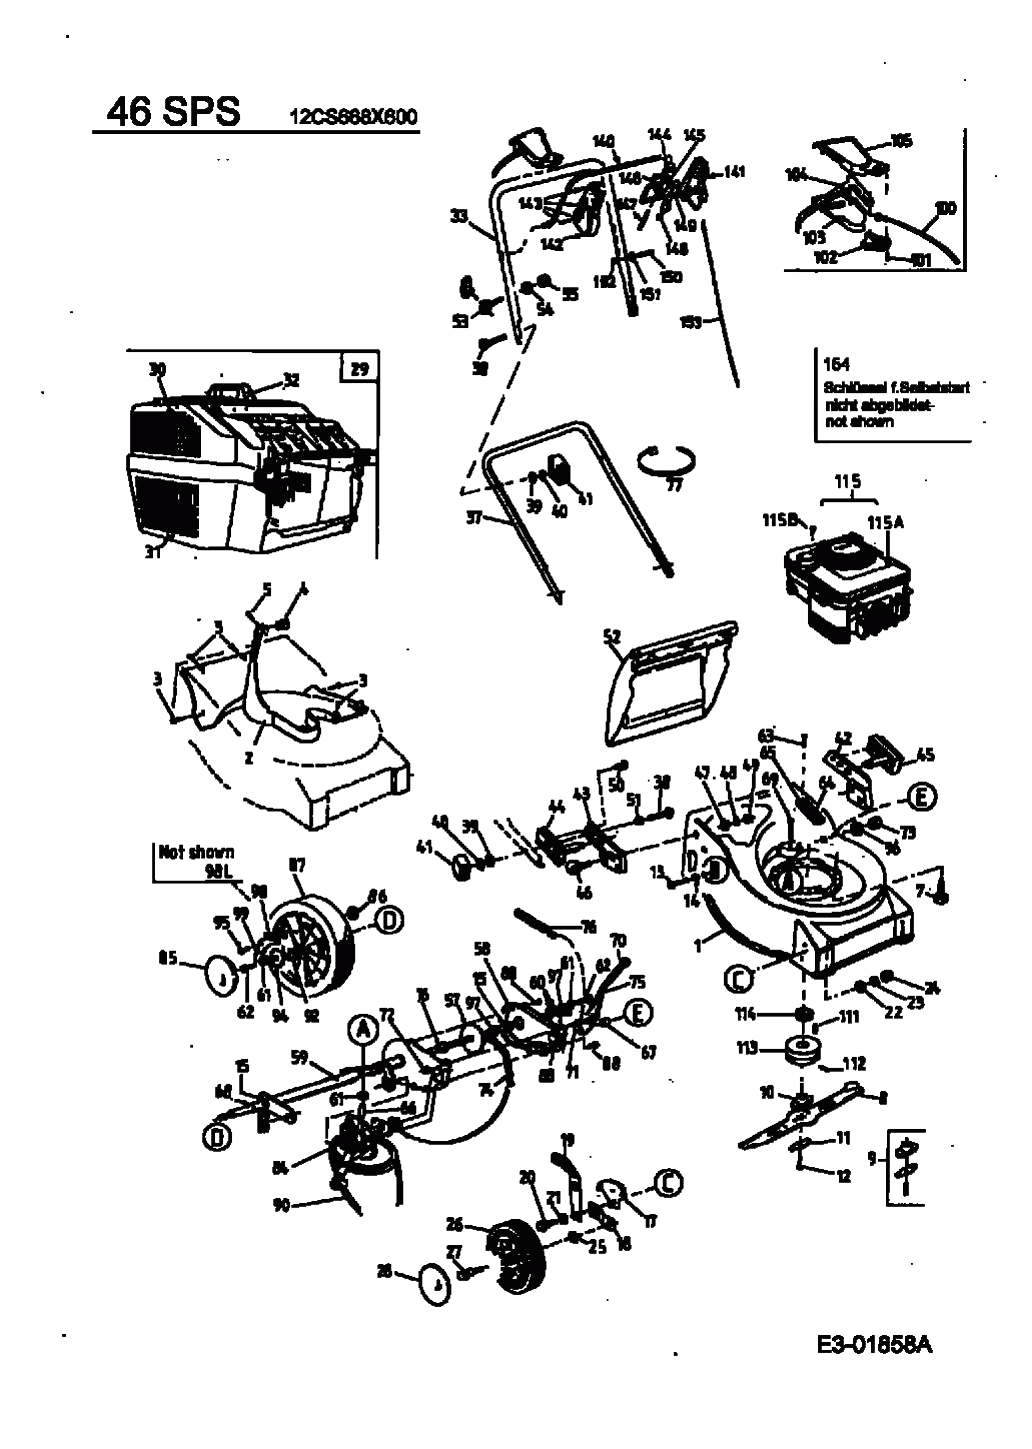 MTD Артикул 12CS668X600 (год выпуска 2003). Основная деталировка